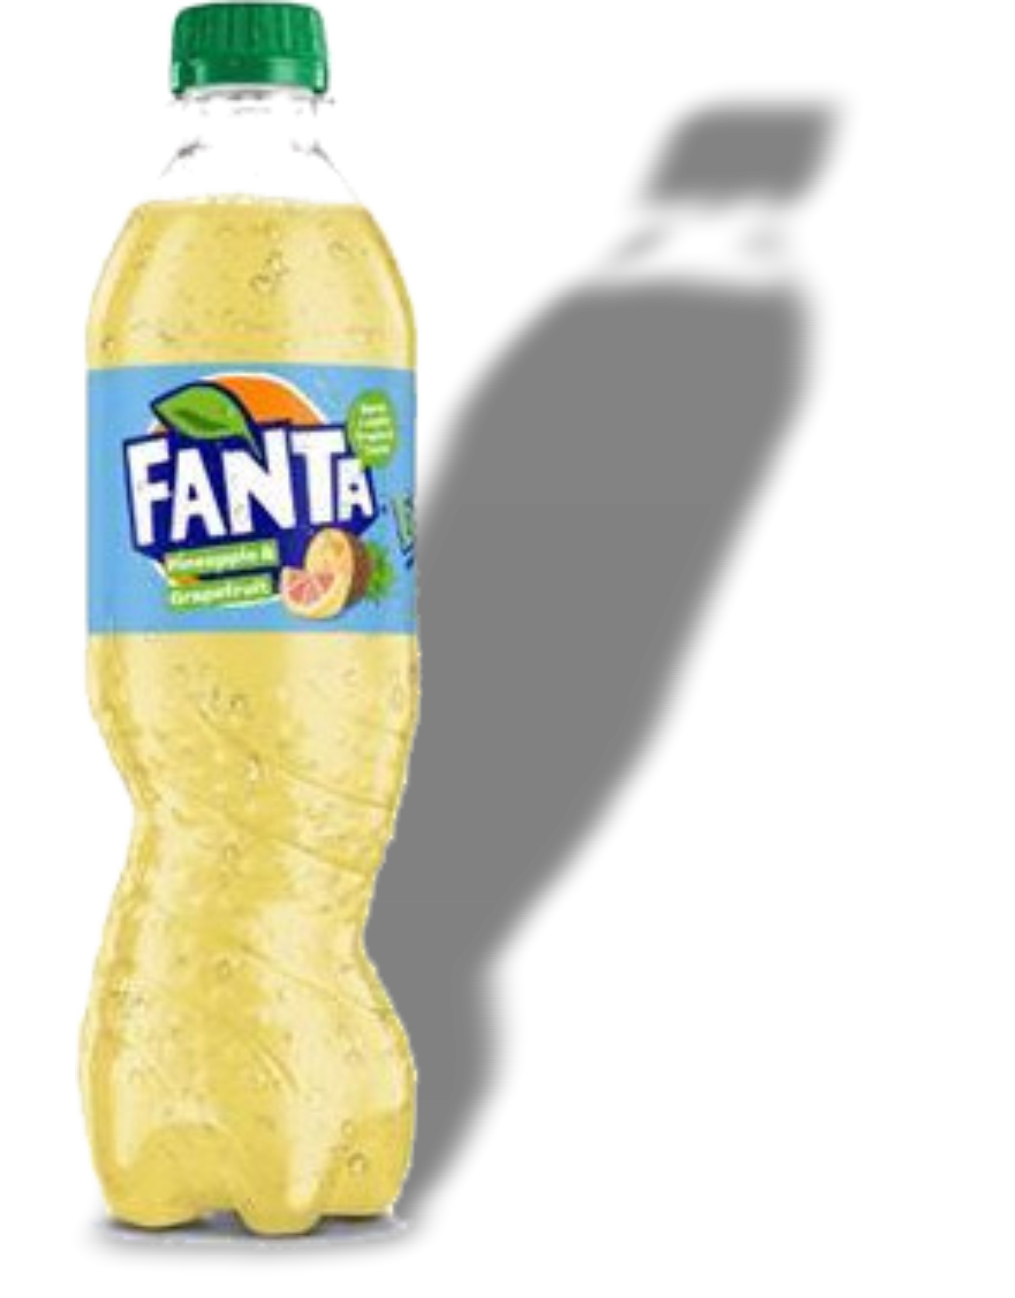 Fanta Pineapple & Grapefruit 500ml x12 bottles [S294]